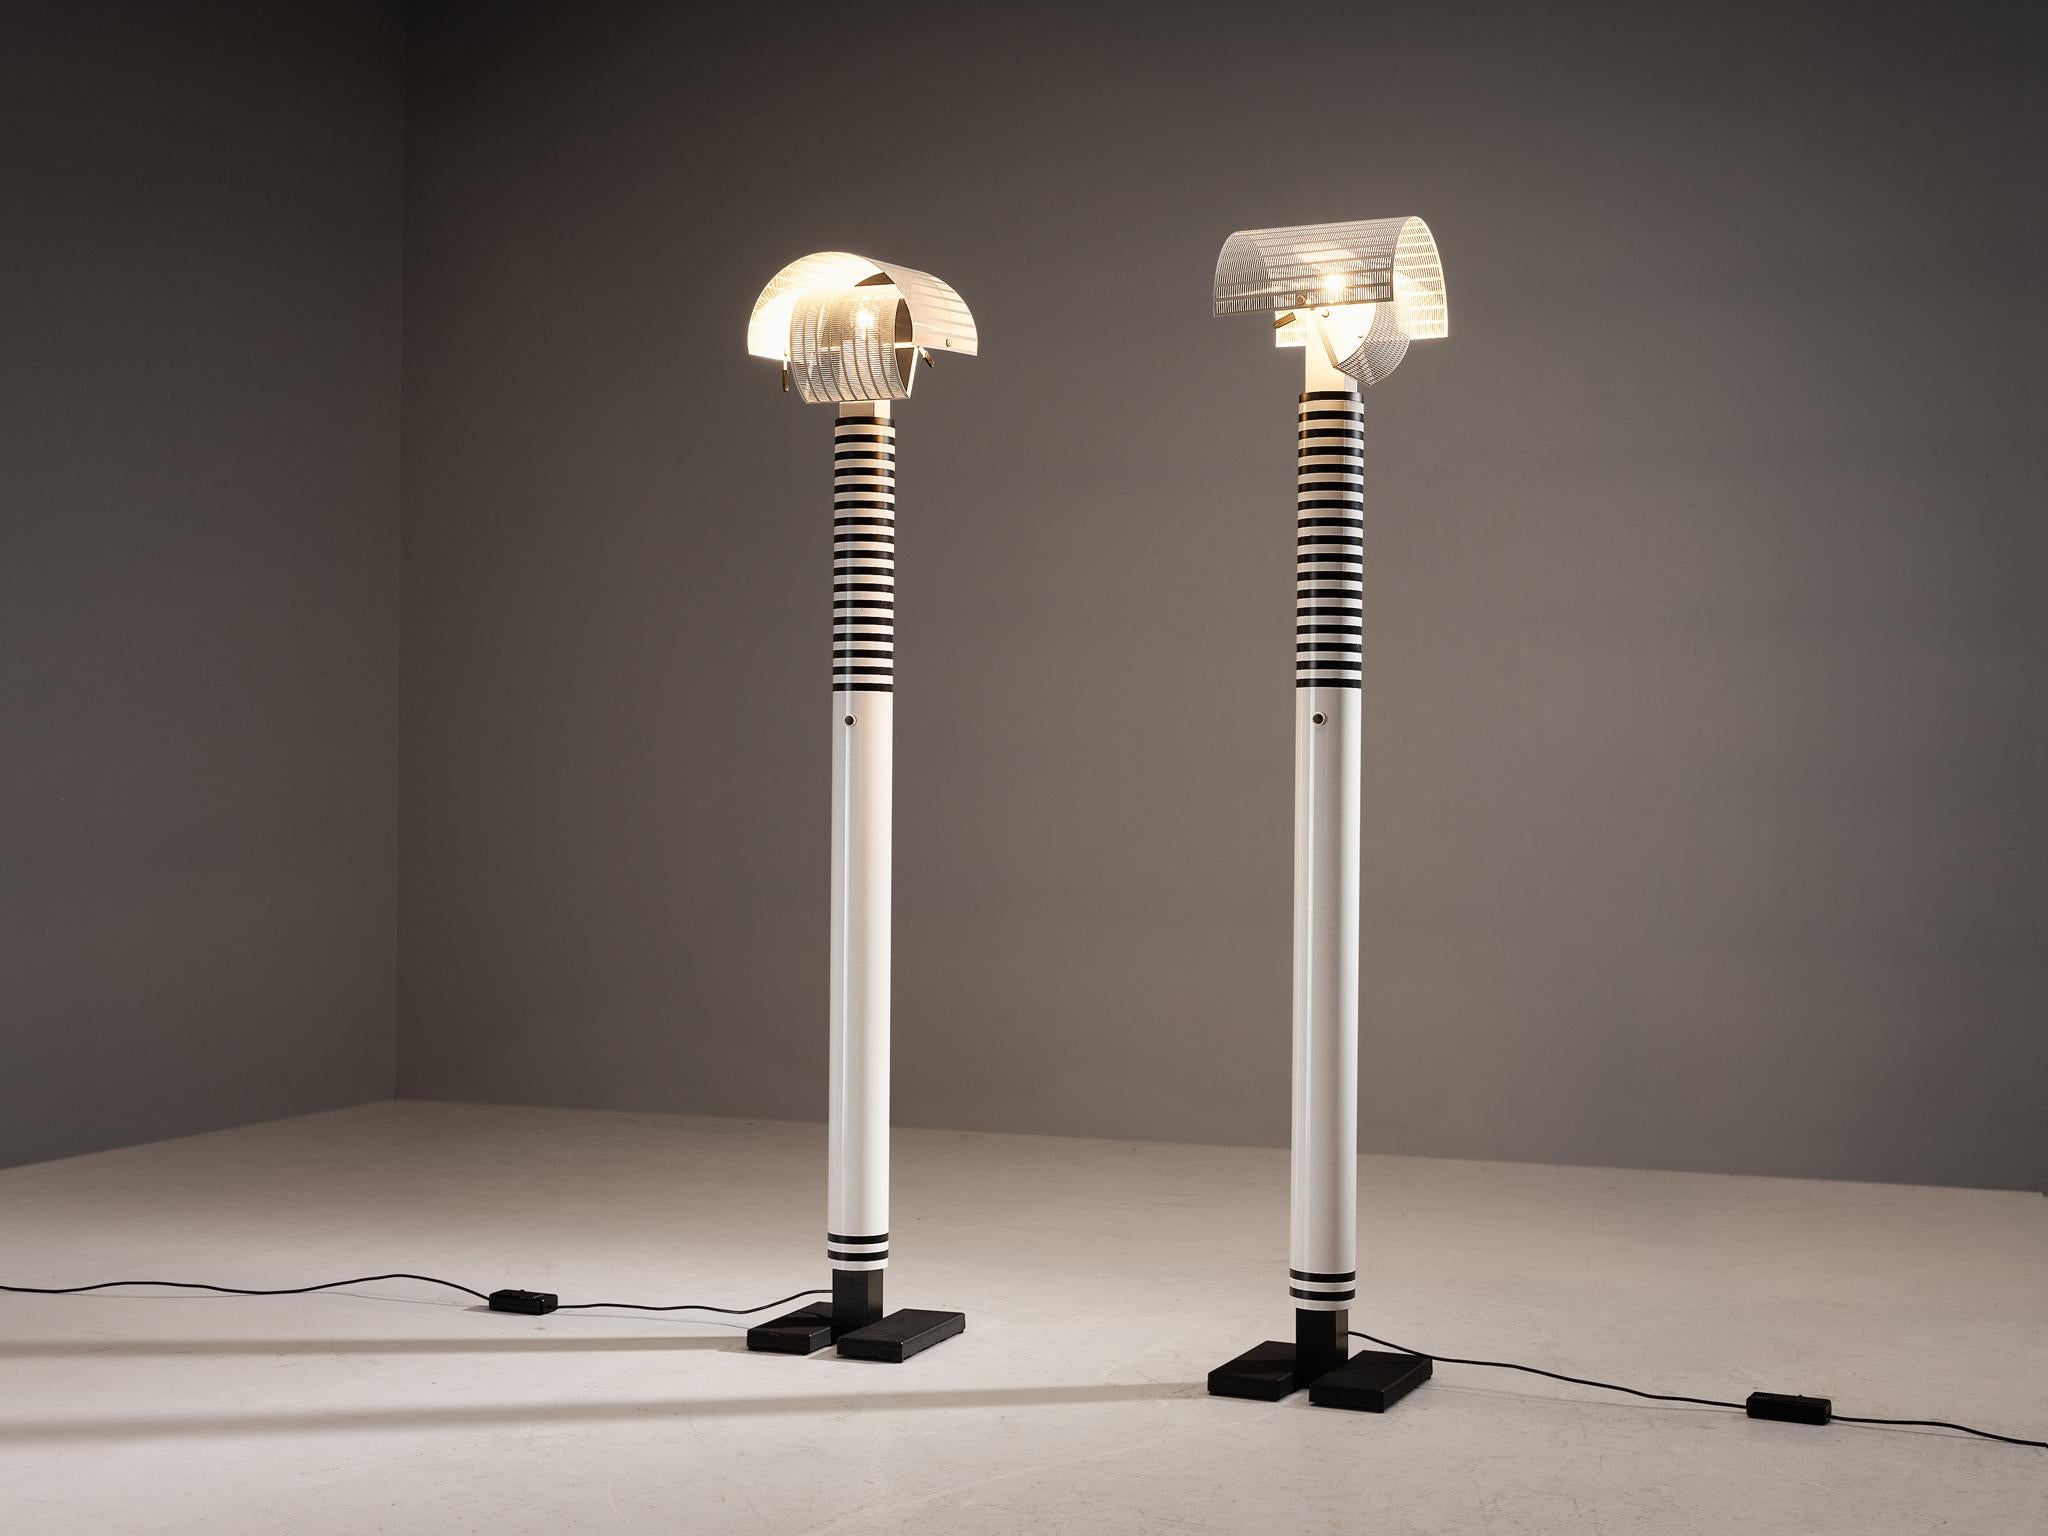 Mario Botta pour Artemide, lampadaires 'Shogun', aluminium, acier, Italie, 1986 

Mario Botta a qualifié les lampes de 